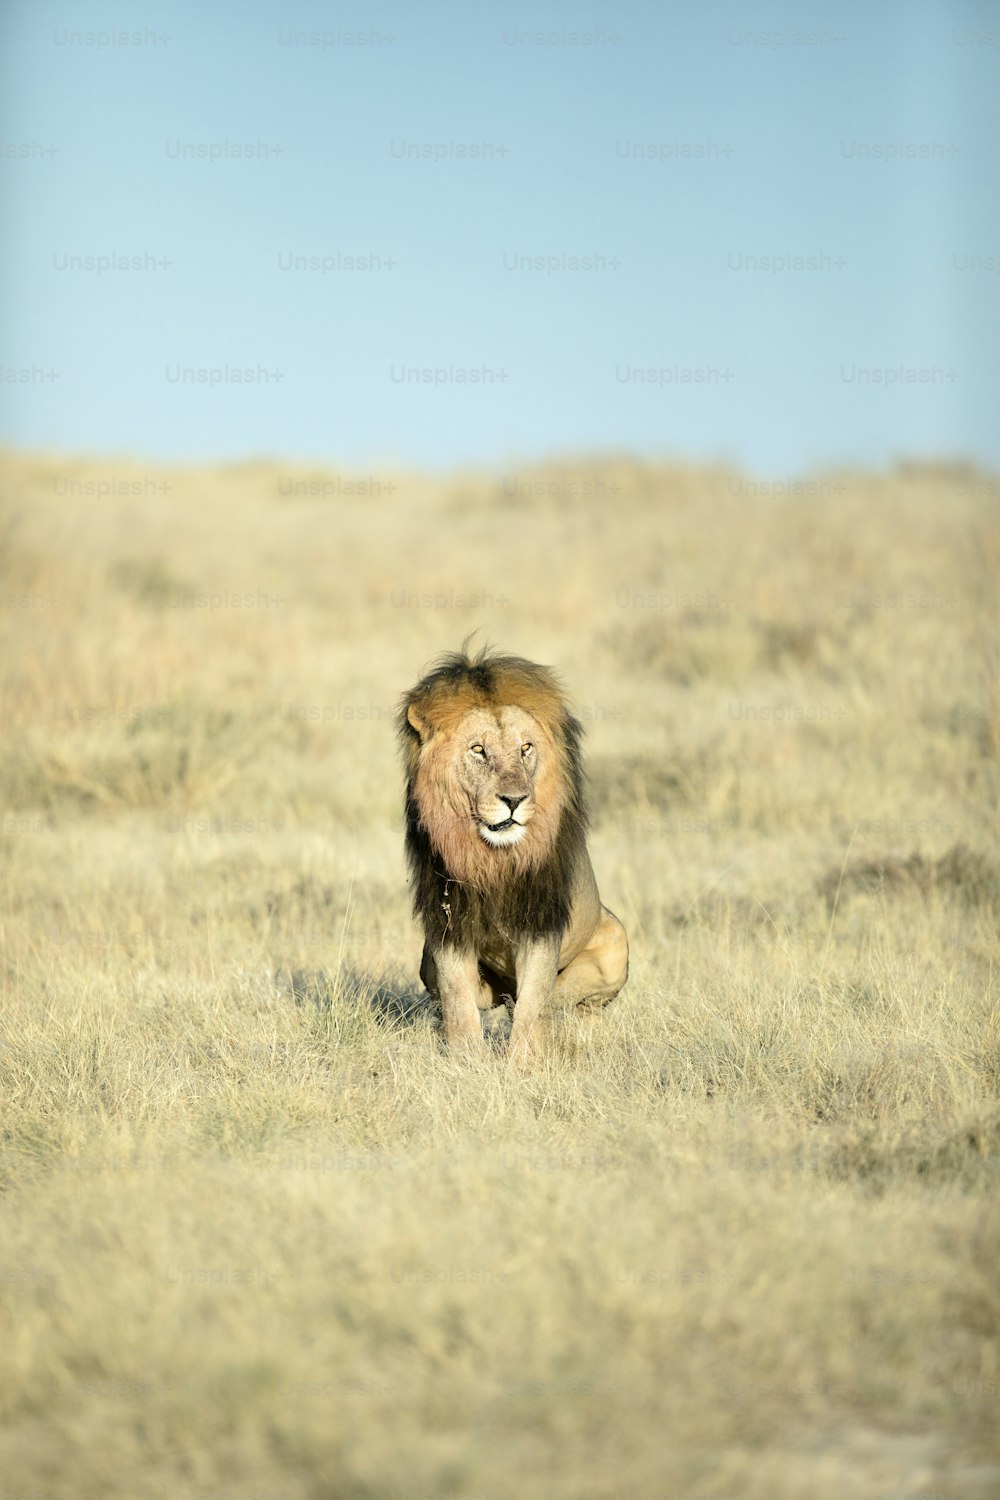 Un lion mâle avec du sang sur sa crinière dans le parc national d’Etosha, en Namibie.